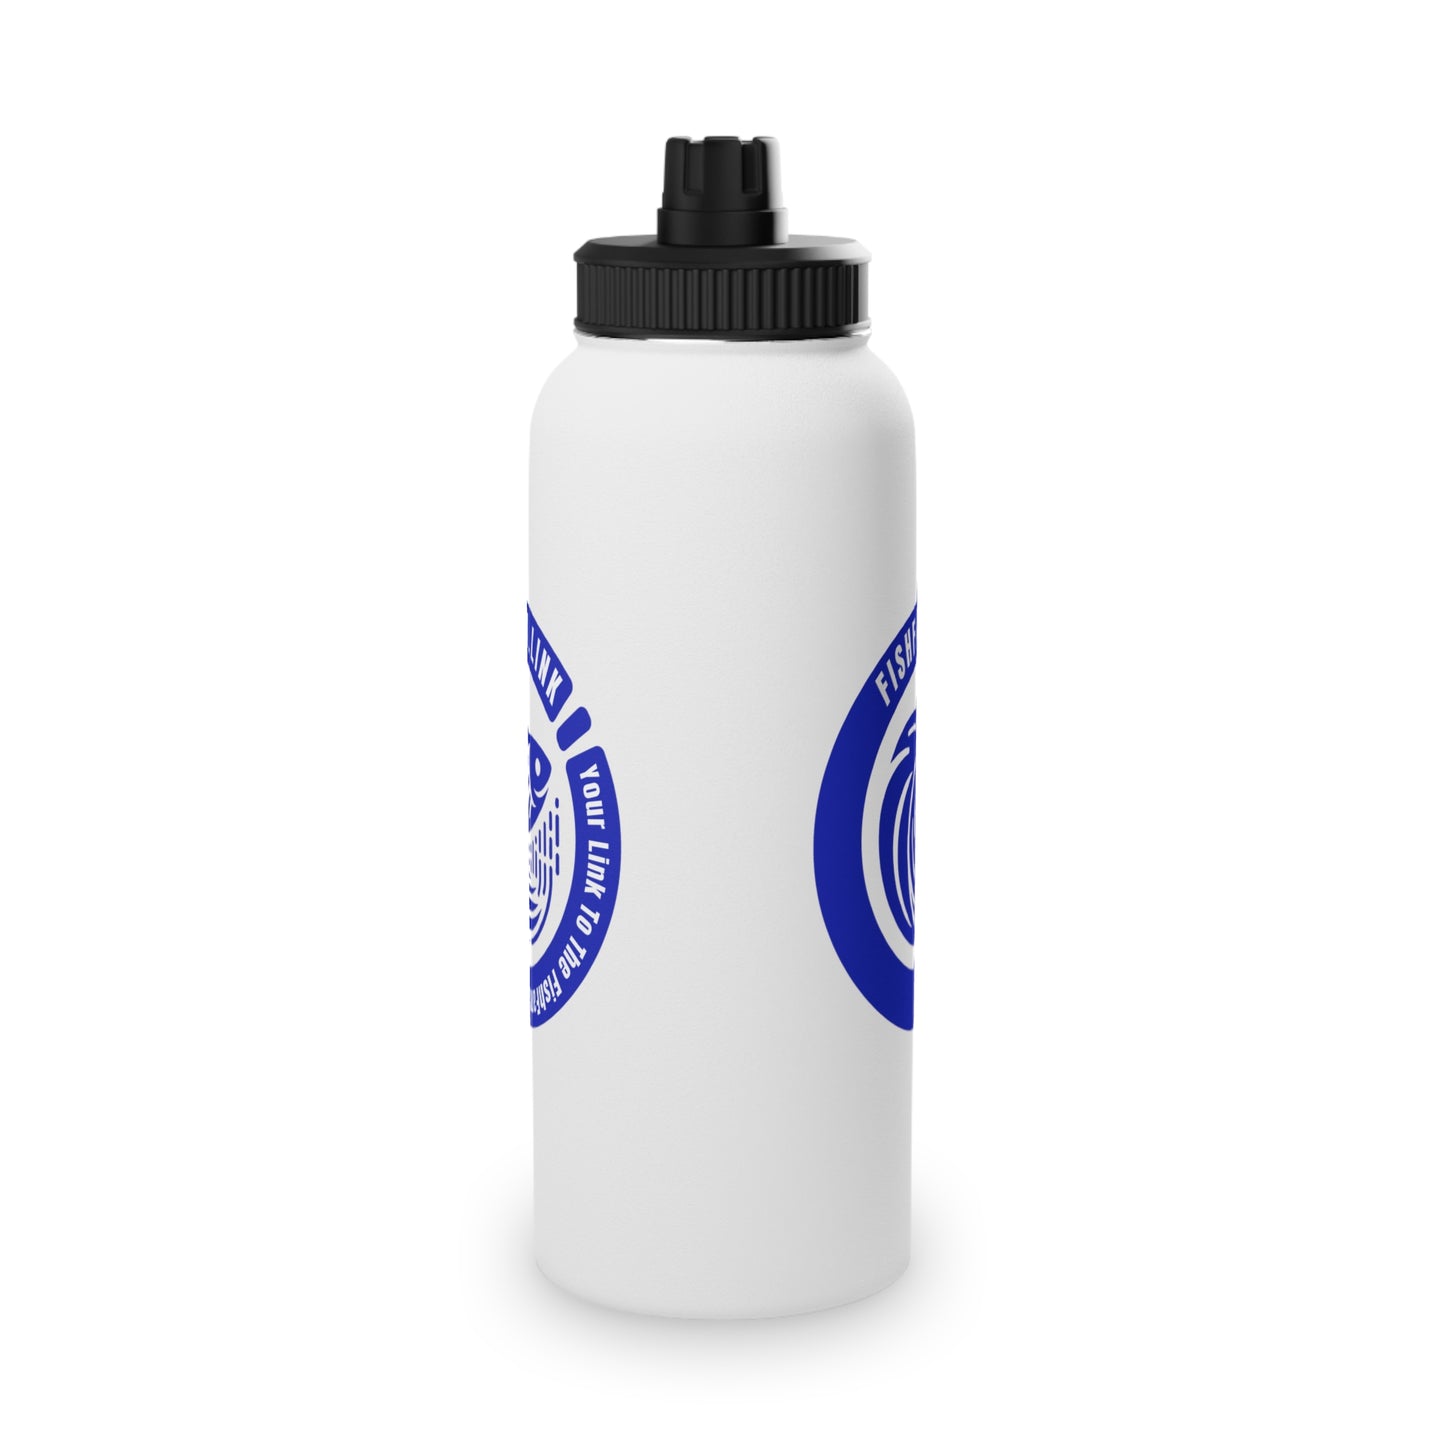 FishFamLink Stainless Steel Water Bottle, Sports Lid